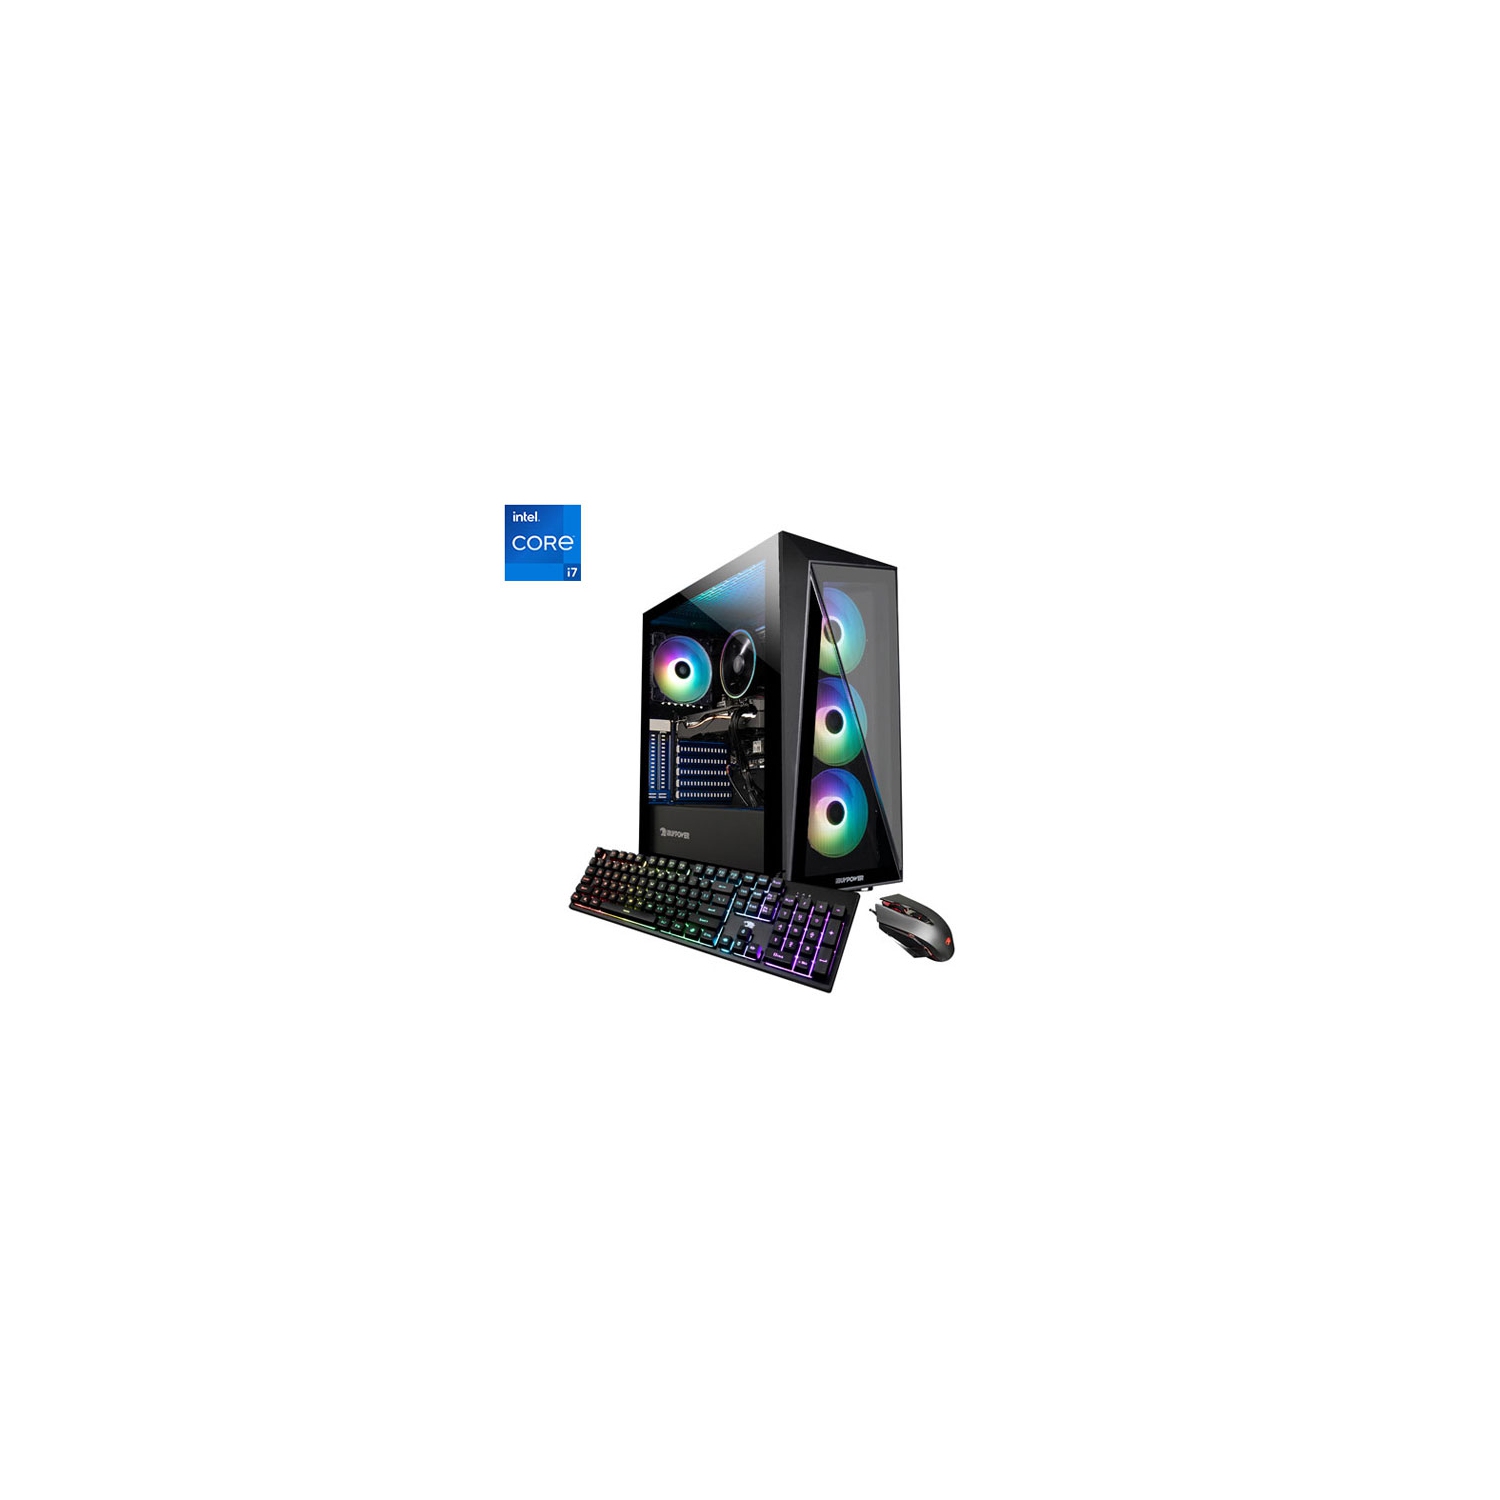 Open Box - iBUYPOWER Trace4MR Gaming PC (Intel Core i7-11700F/1TB HDD/500GB SSD/16GB RAM/RTX 2070 Super)